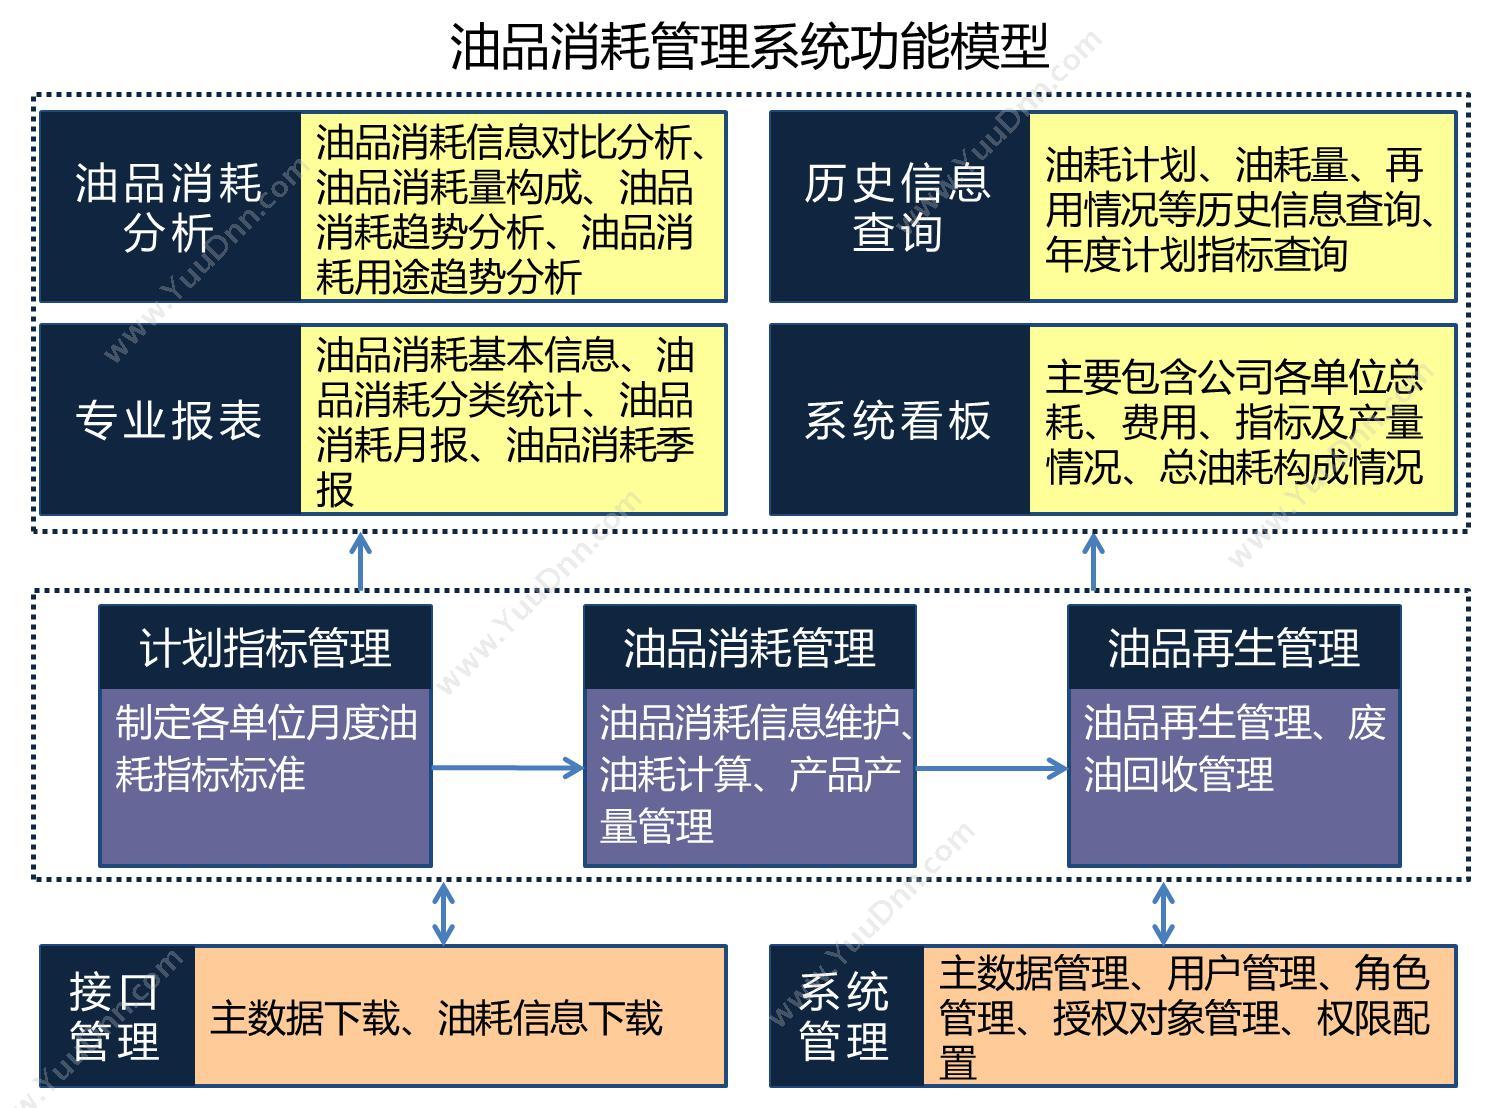 北京速力科技有限公司 油品消耗管理系统 制造加工